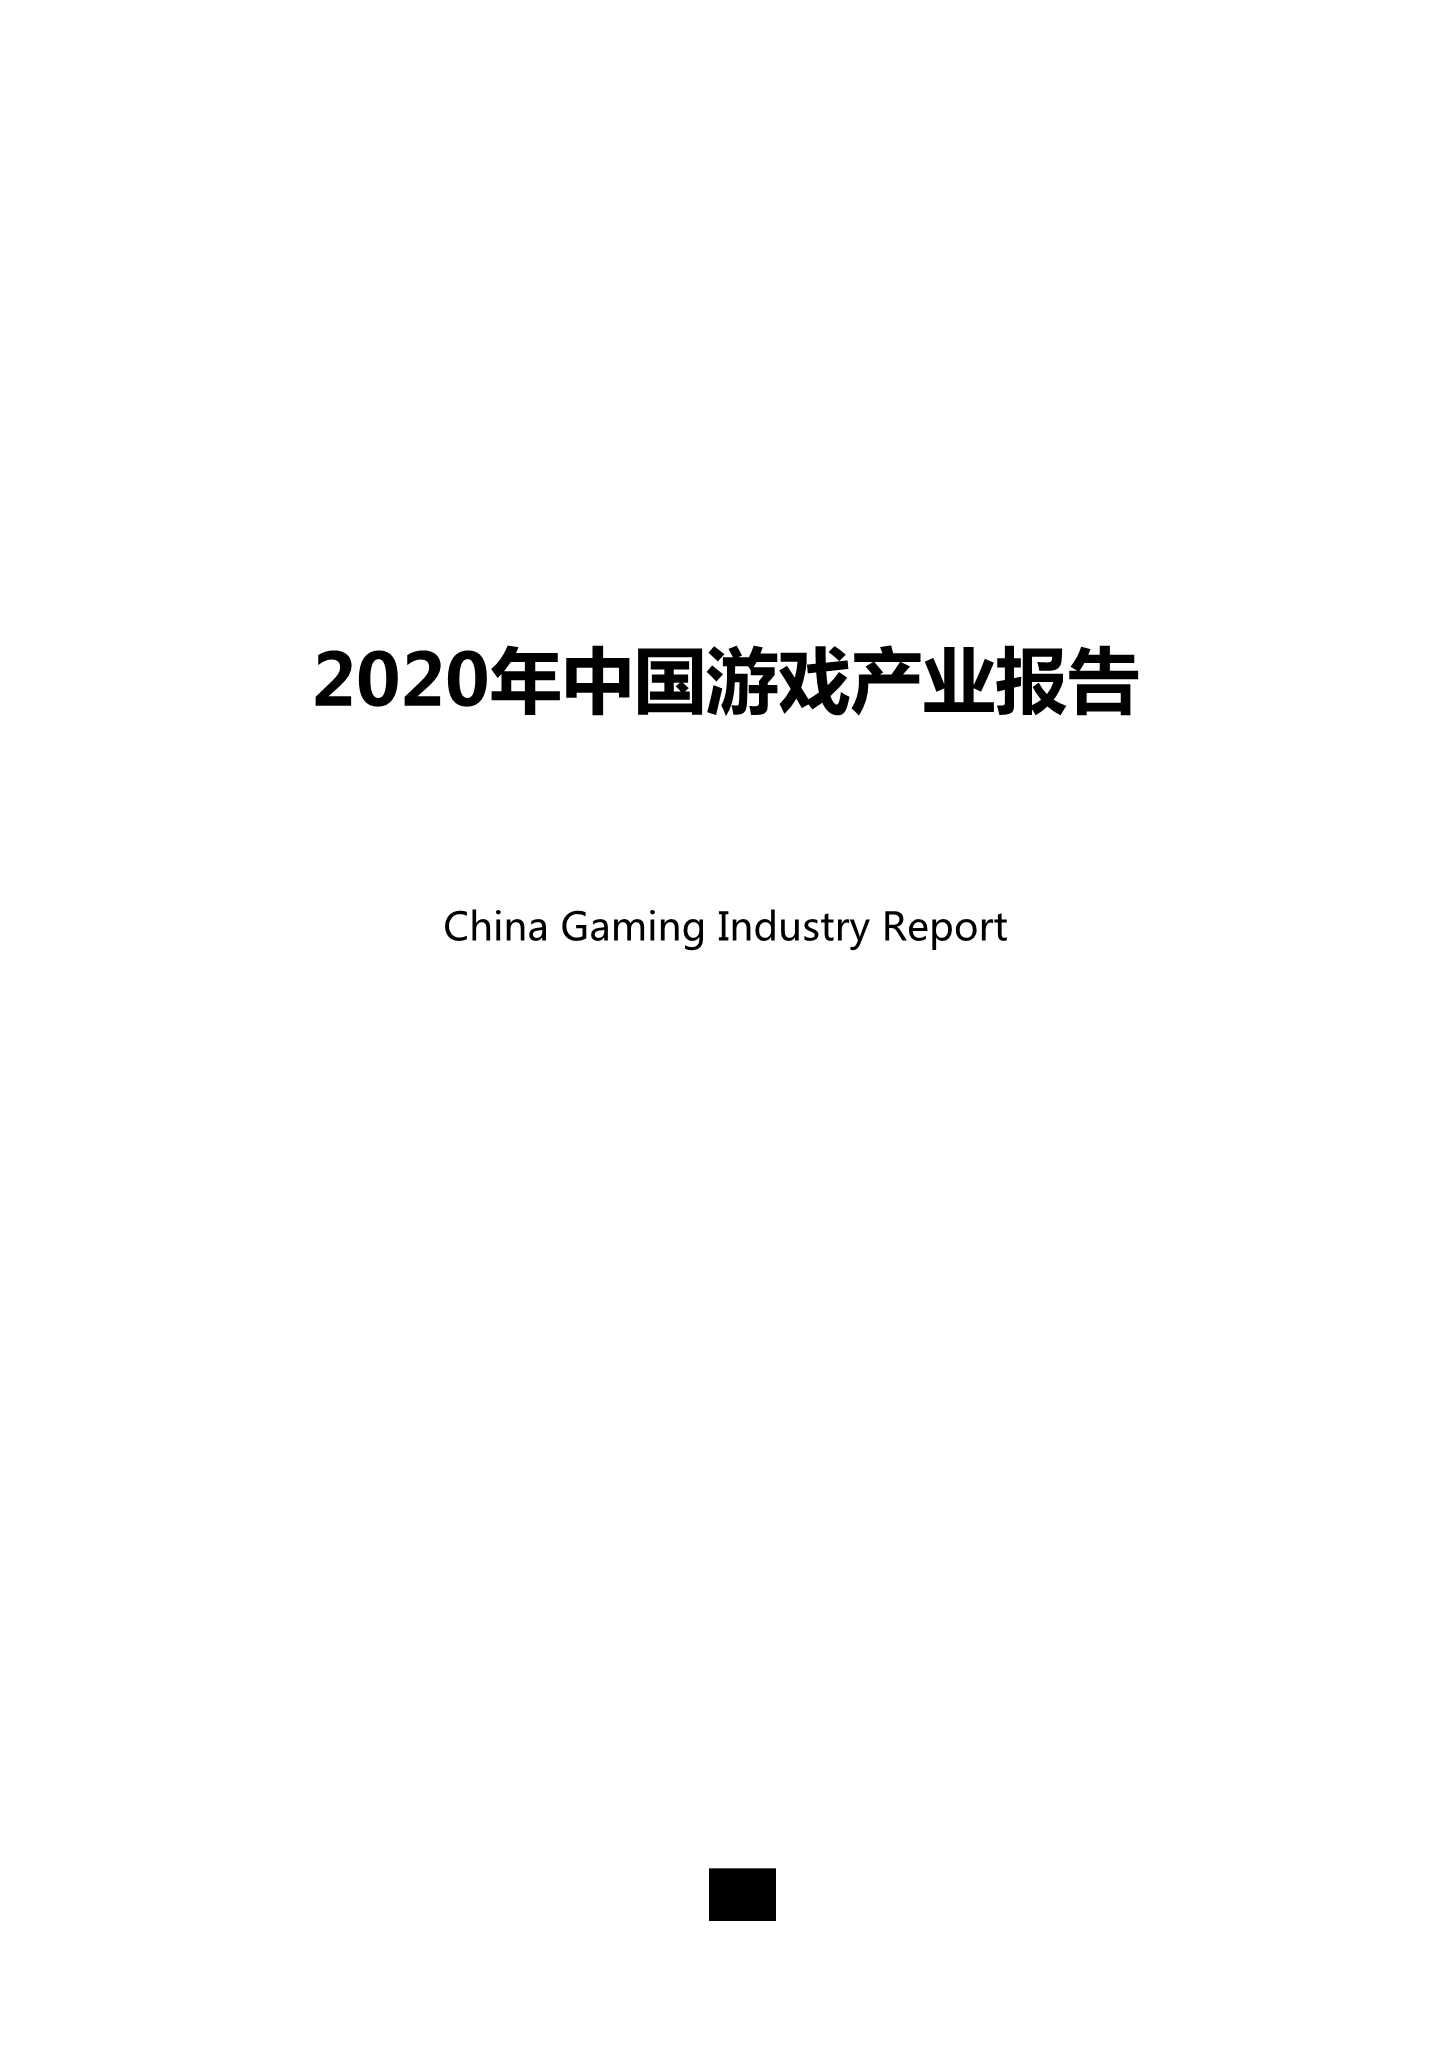 中国音数协游戏工委-2020年中国游戏产业报告-2021.08-36页